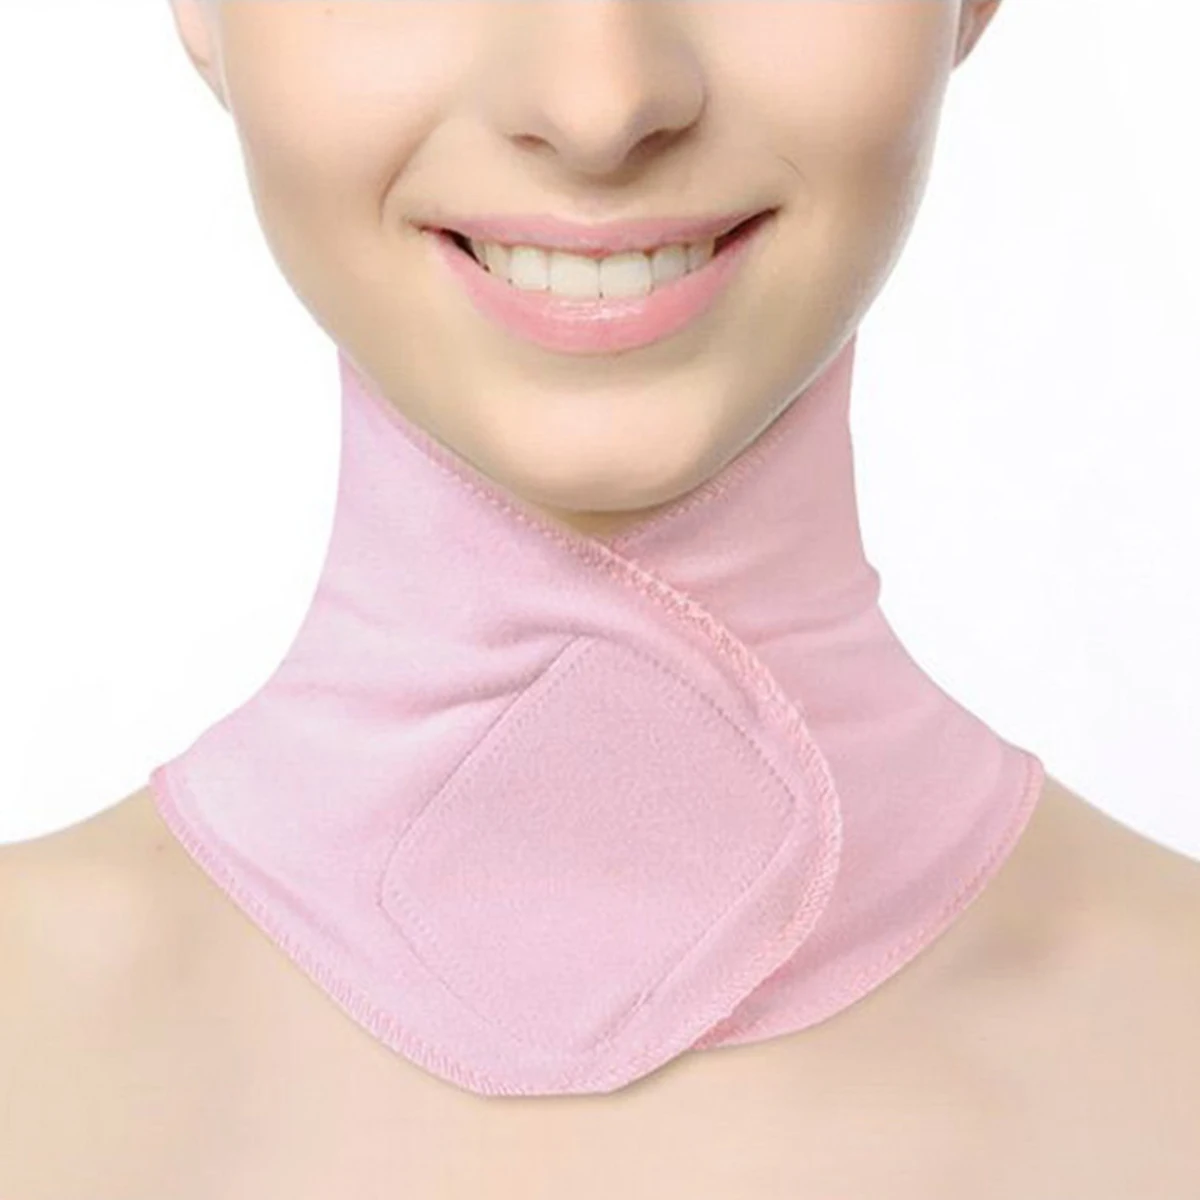 Увлажняющая маска для ухода за кожей Шеи спа против морщин Подтяжка кожи шеи крем лечение отбеливающий Восстанавливающий многоразовый Мембрана для шеи